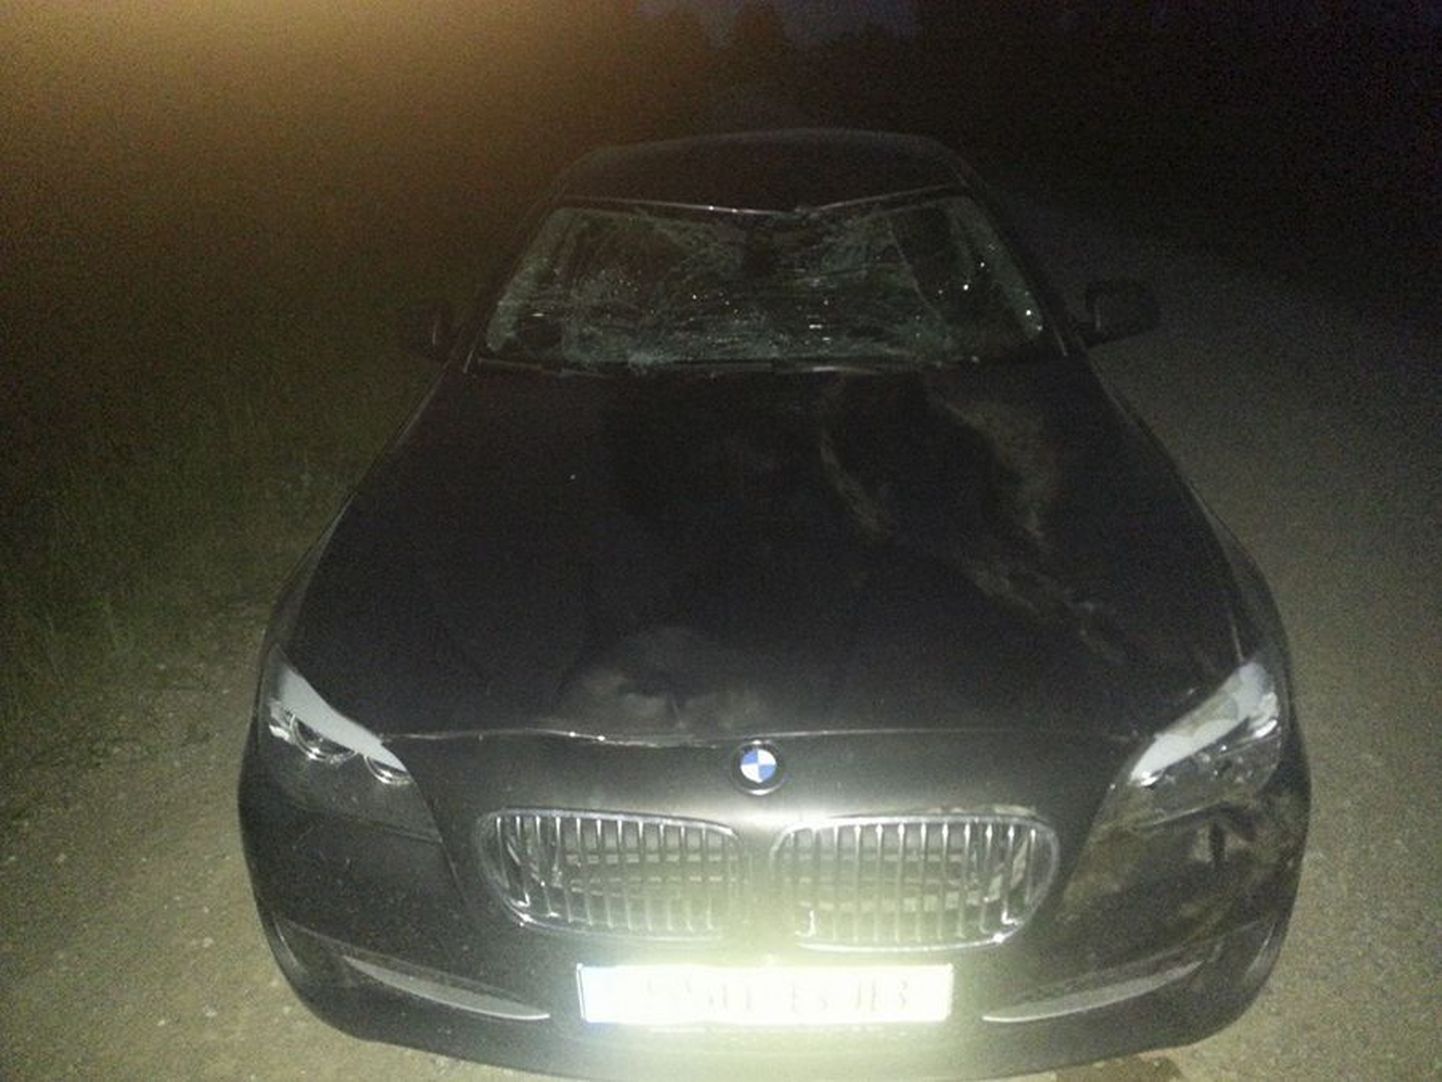 Priit Toobali kasutada olev BMW 520 sai kokkupõrkel põdraga tugevalt kahjustada.